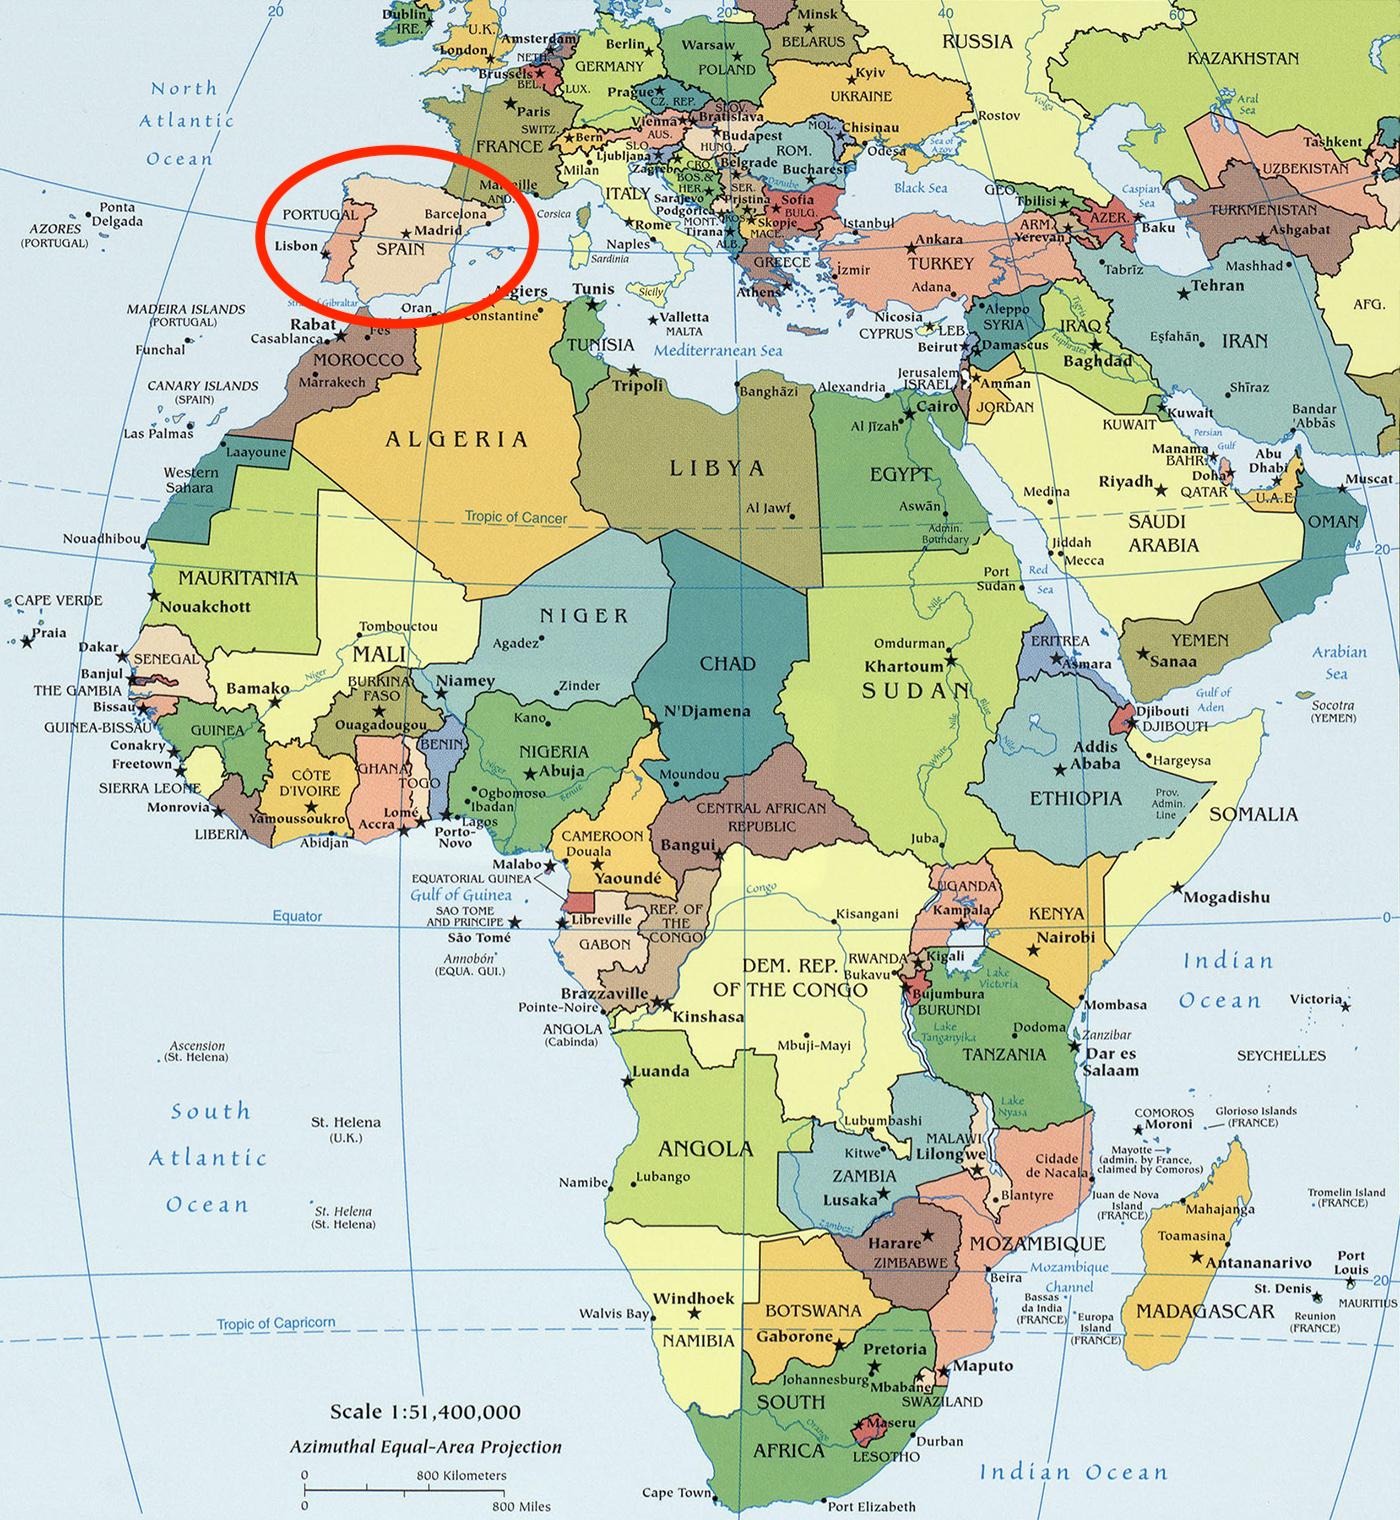 Kart over Spania og afrika - Afrika og Spania kart (Sør-Europa - Europa)